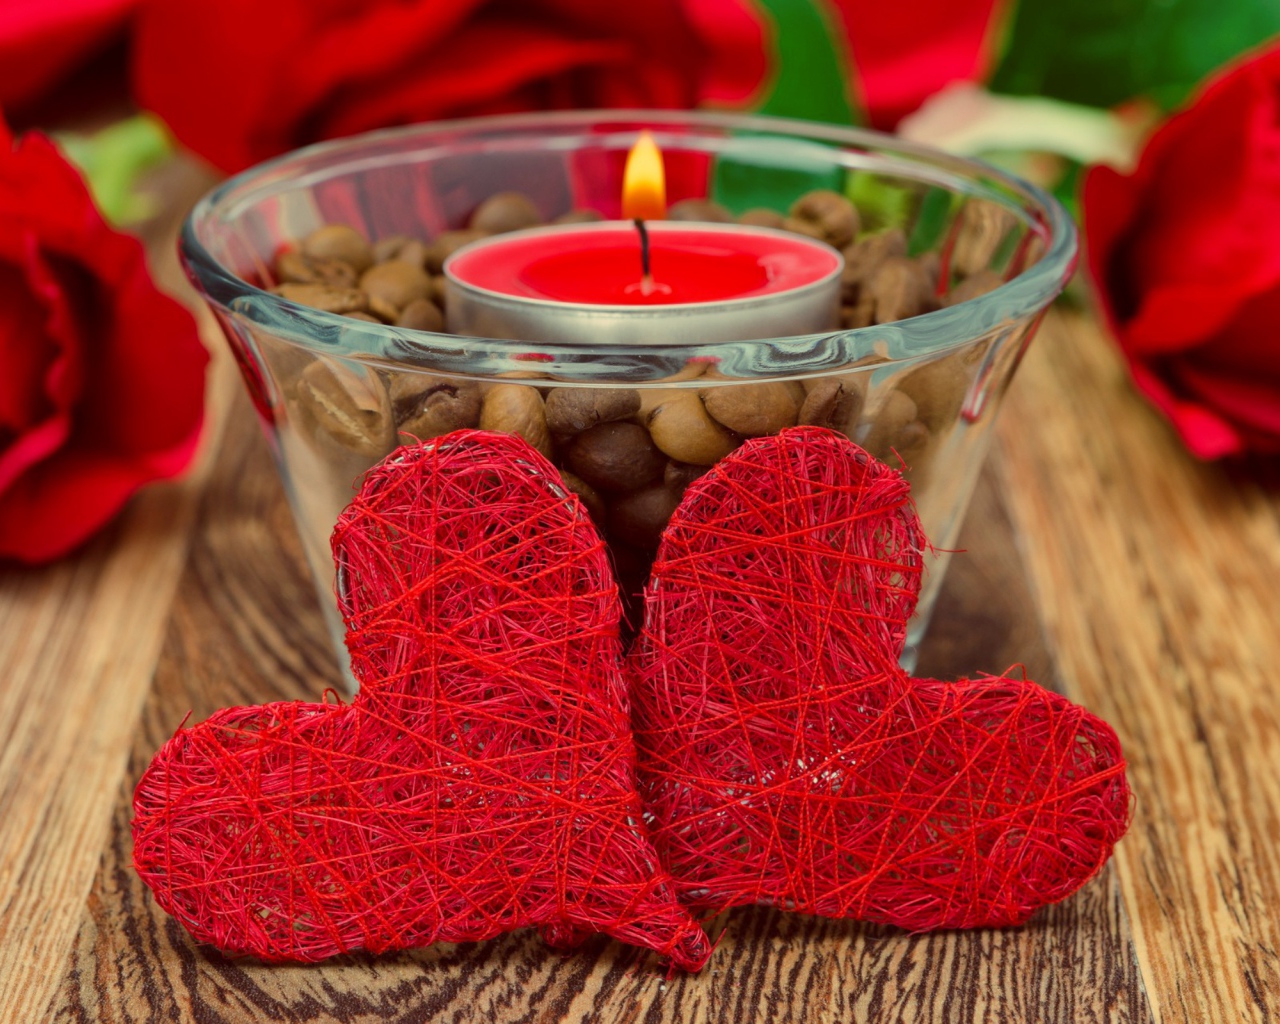 Два красных плетеных сердца на столе с зажженной свечой